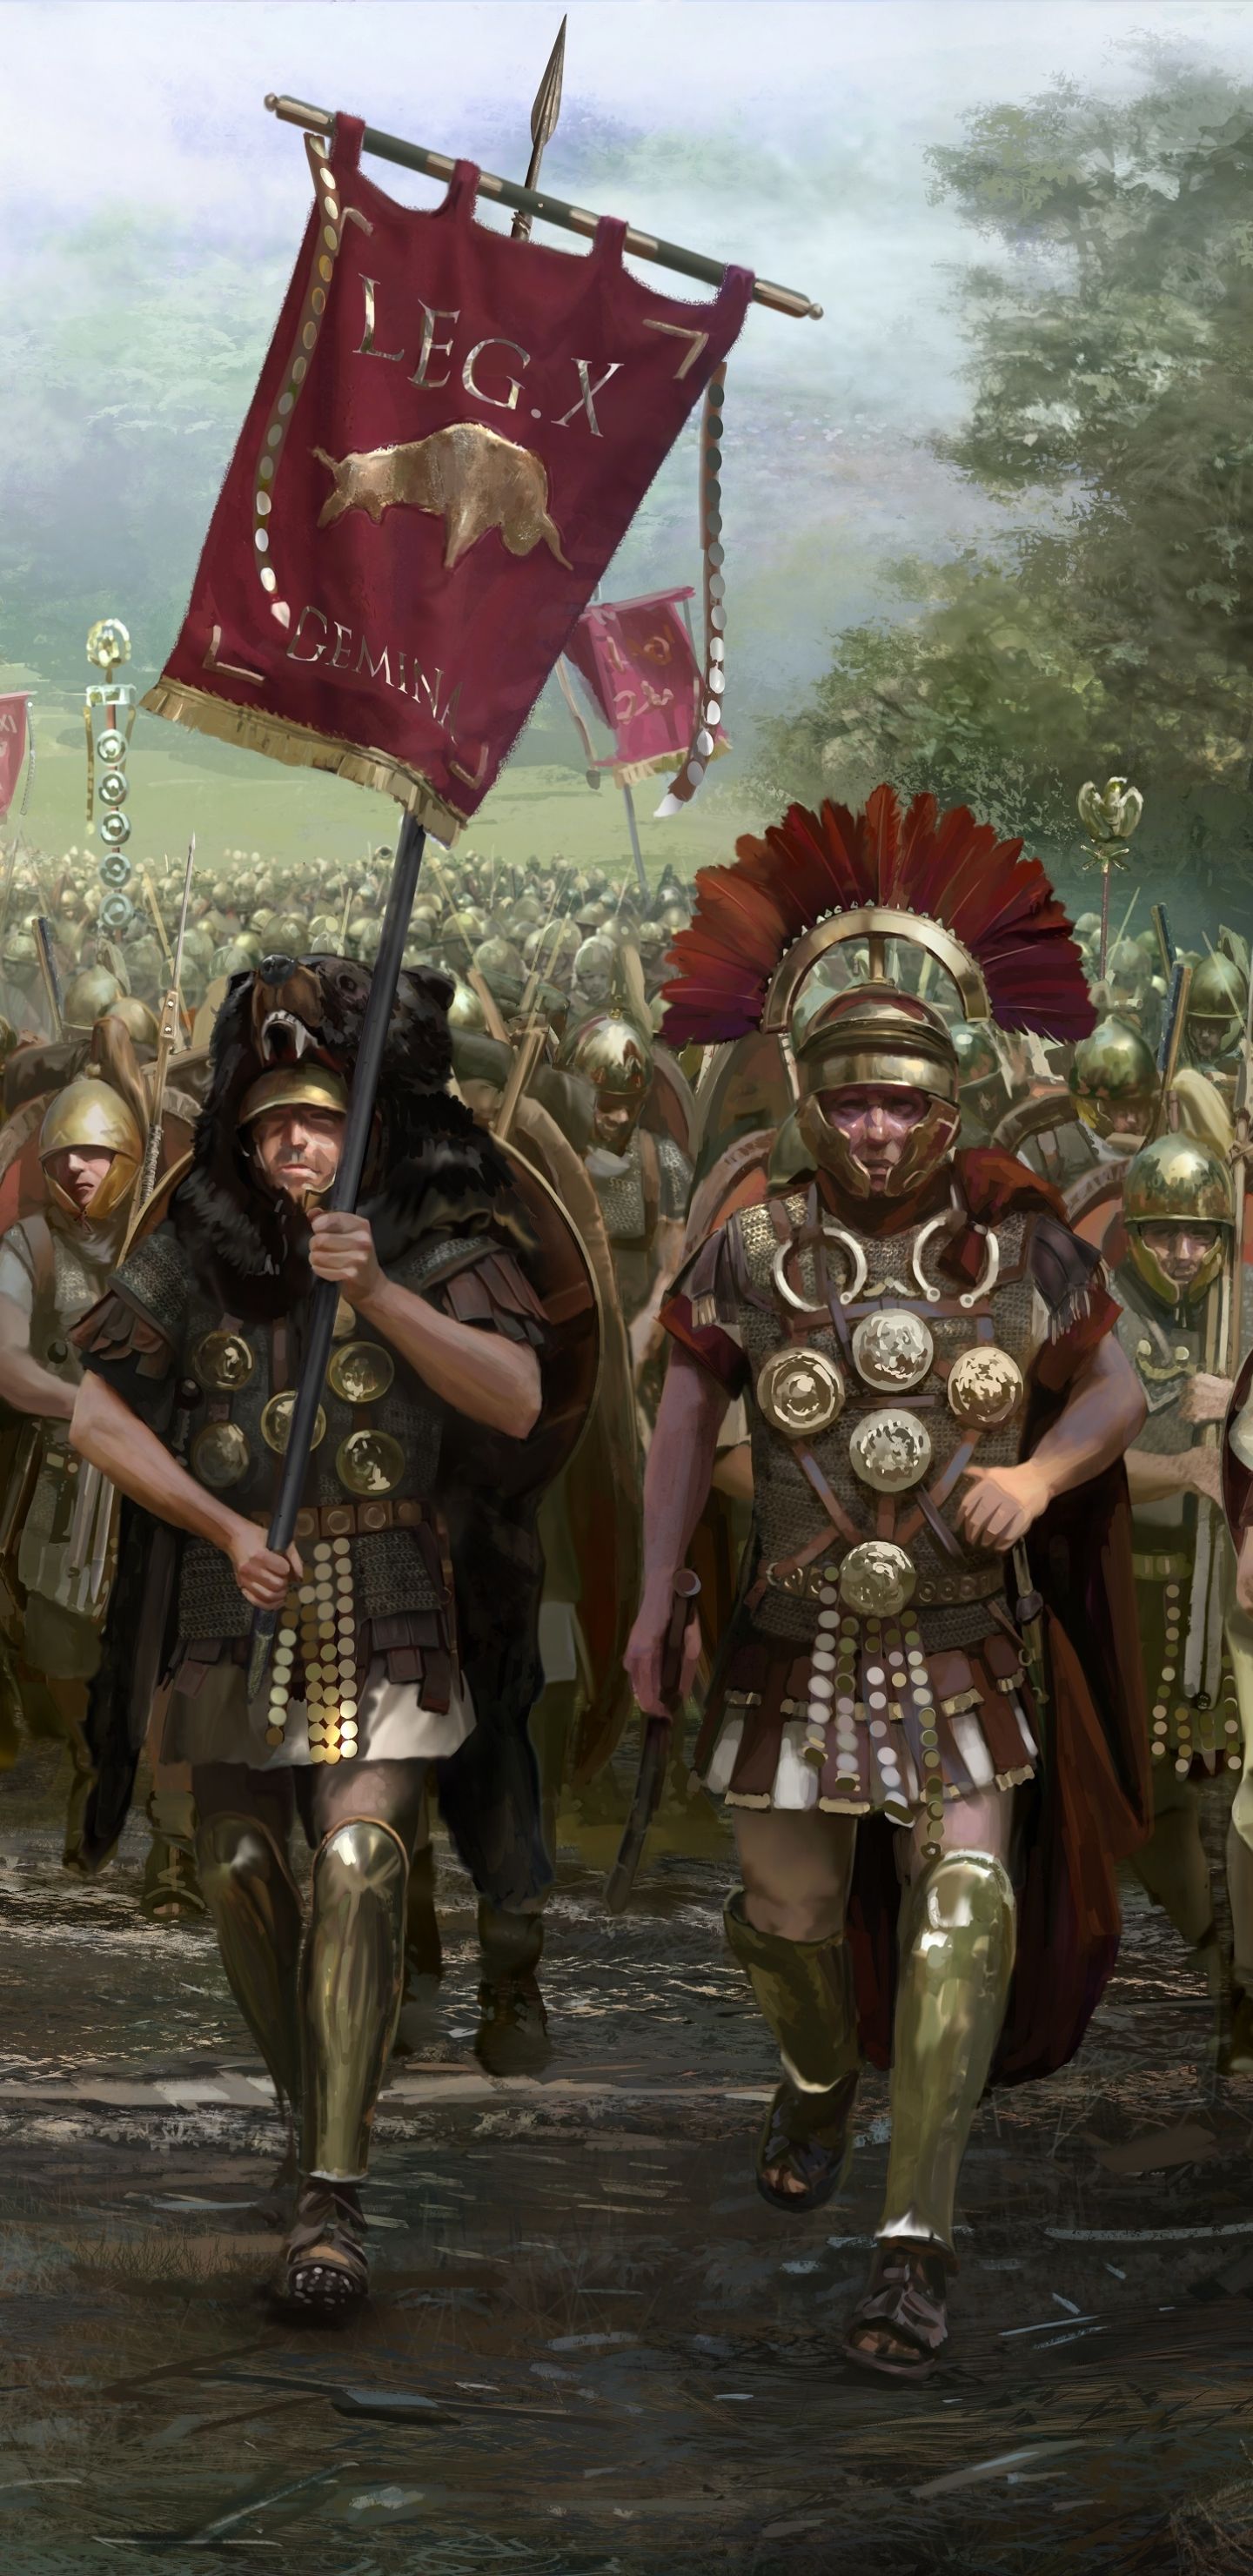 Приму в легион. Римские легионеры тотал вар. Римская Империя Римский Легион. Тотал вар Рим 2. Римская Империя воин легиона.